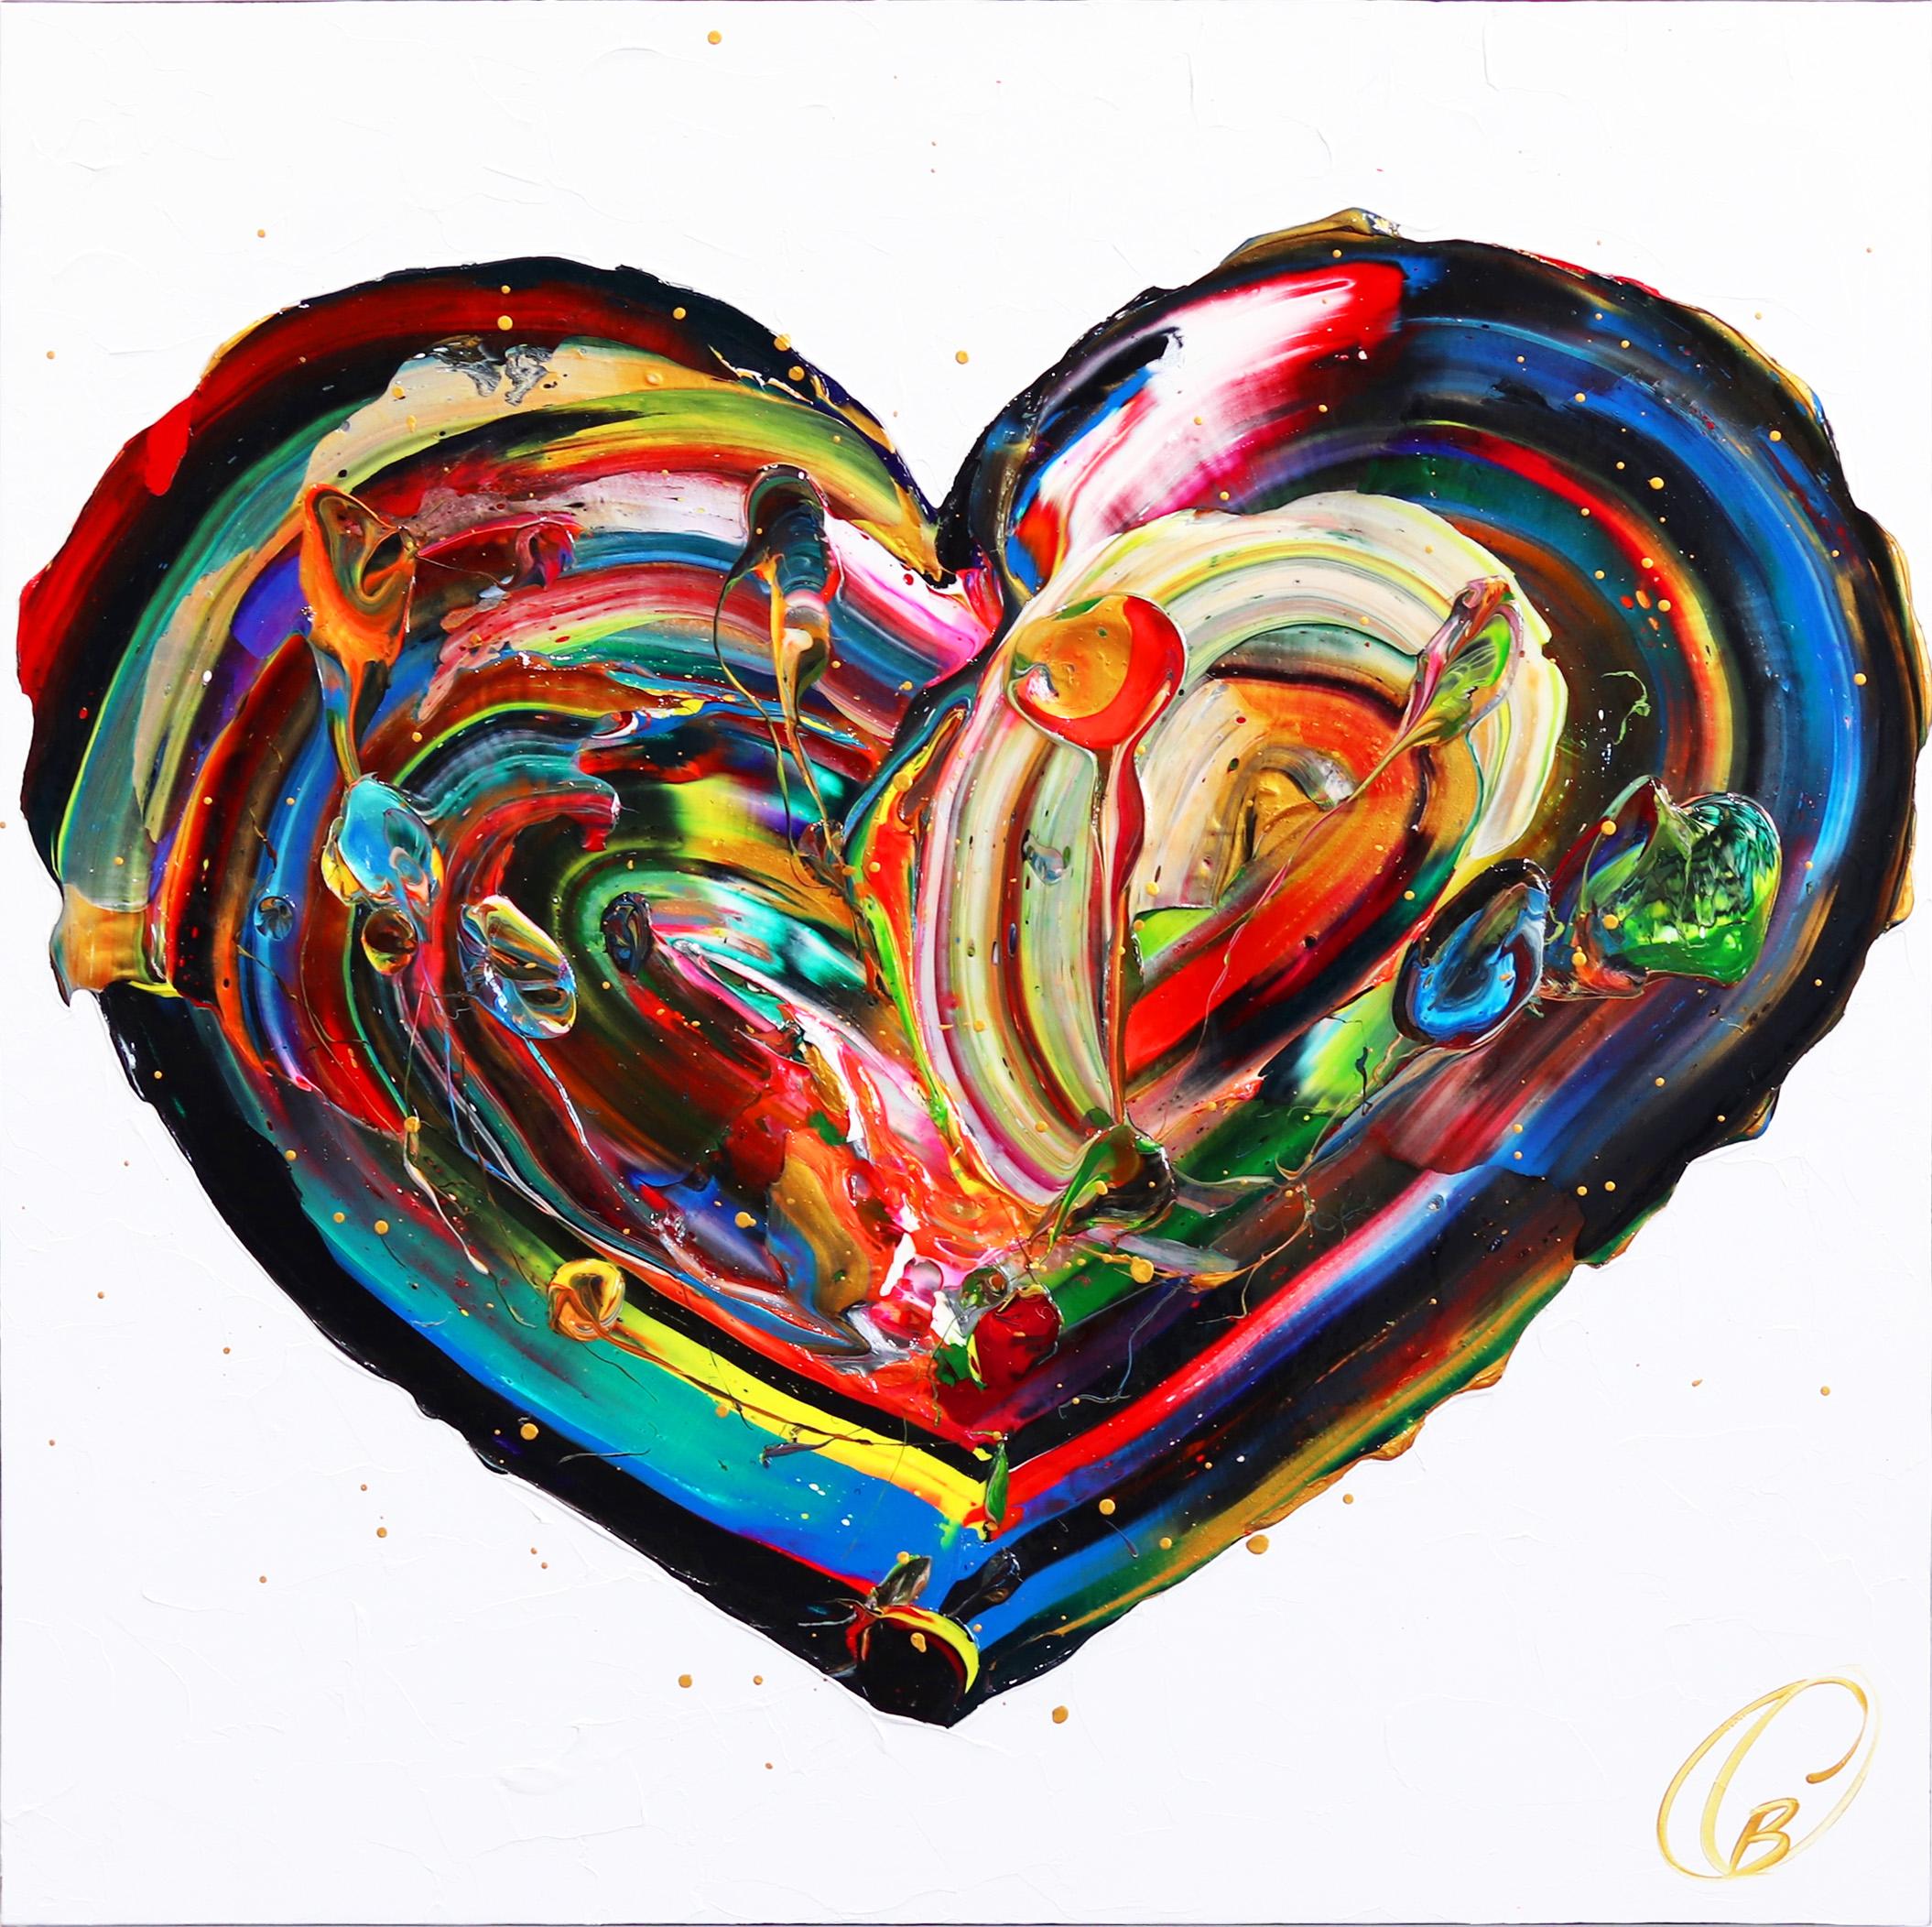 Abstract Painting Cynthia Coulombe Bégin - Love Wins - Impasto Thick Paint Original Colorful Heart Artwork (L'amour l'emporte - Peinture épaisse originale avec un coeur coloré)